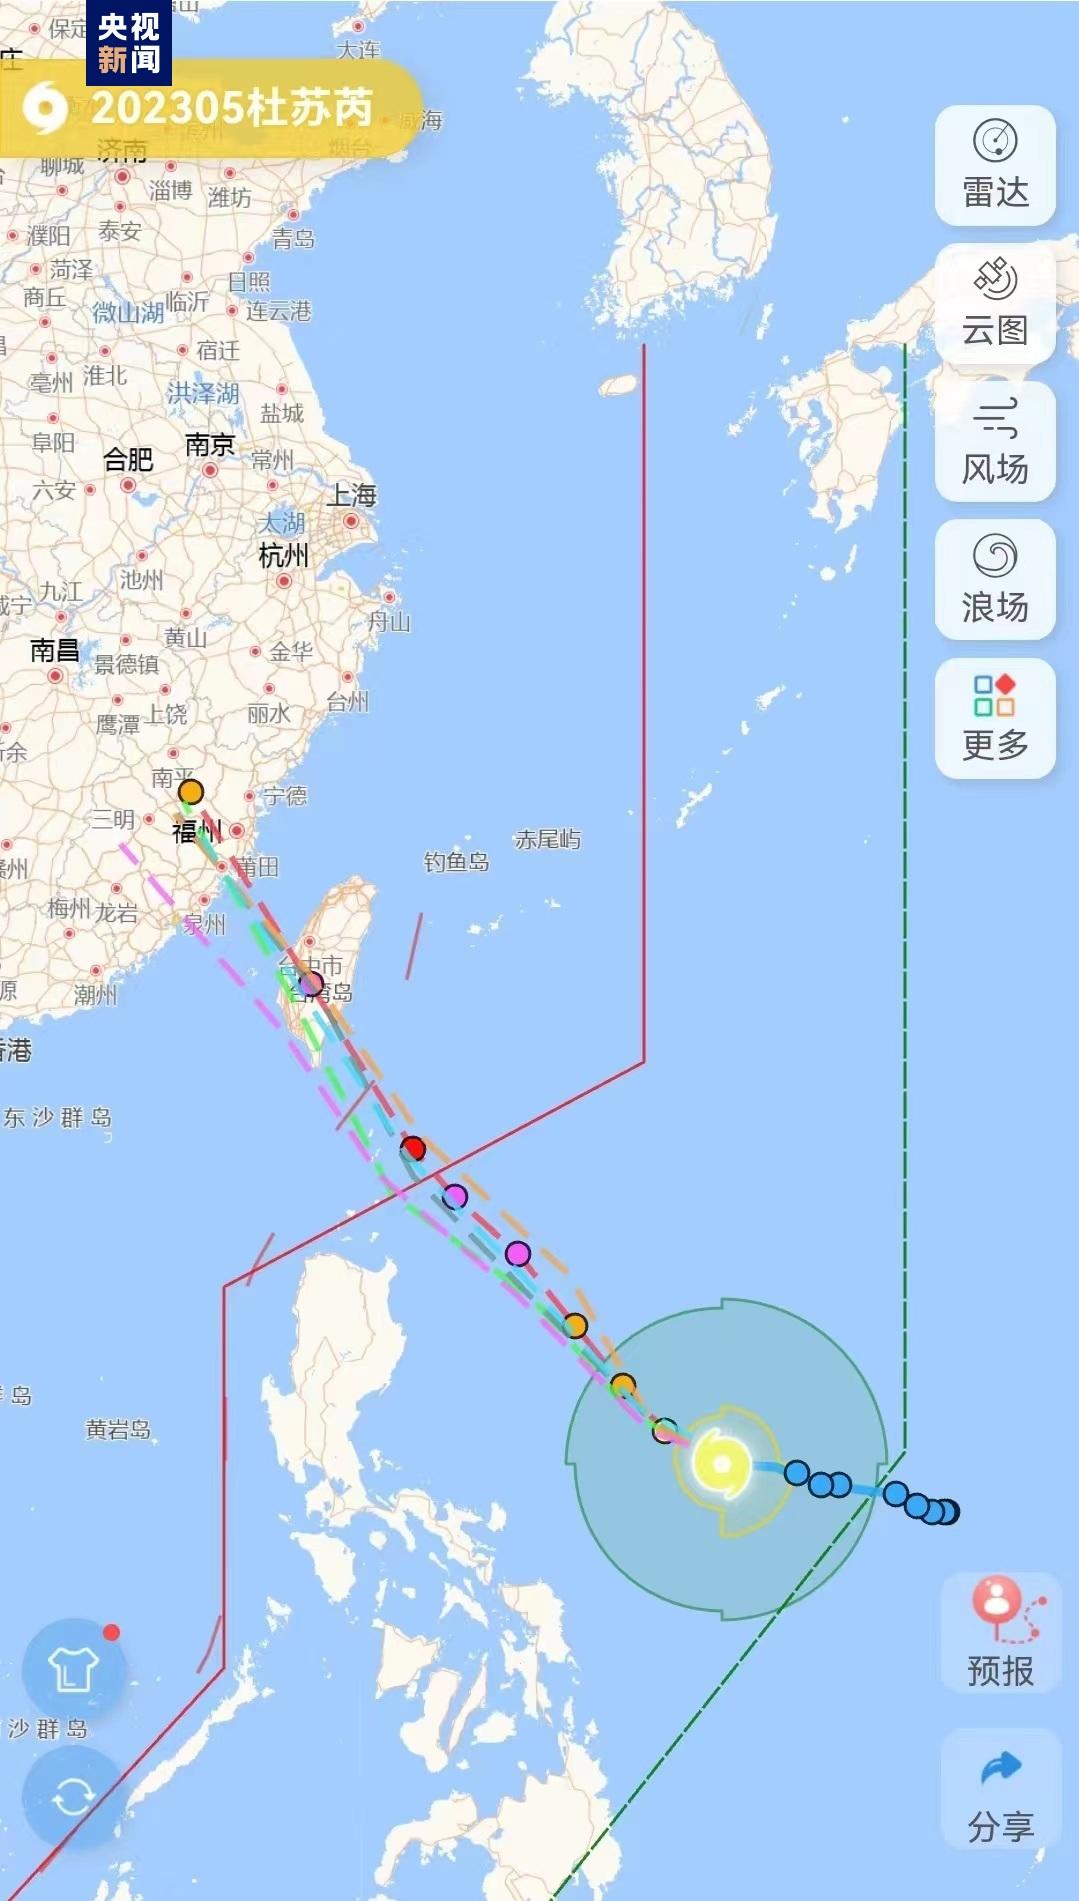 中央氣象台預測杜蘇芮周五登陸福建沿海 - RTHK